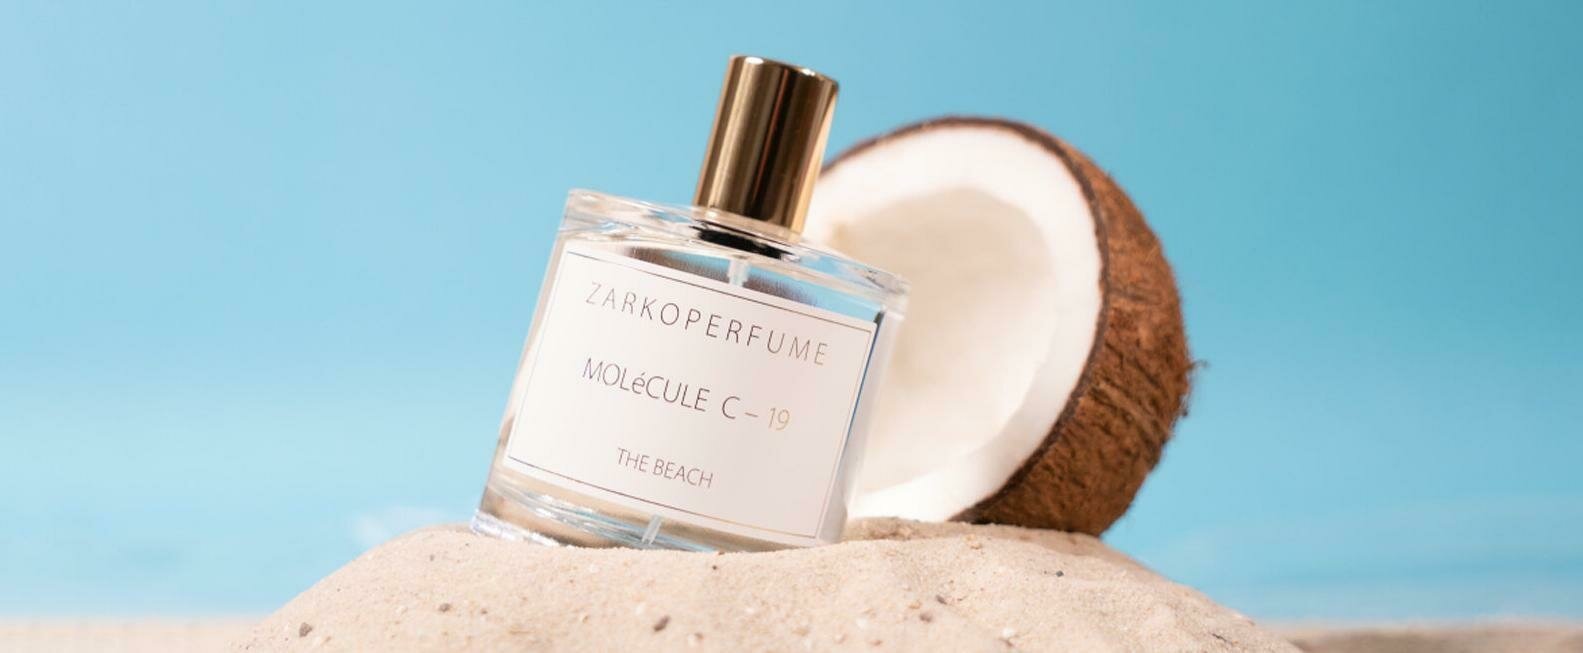 Molécule C-19 - The Beach - Zarkoperfume's New Gourmand Woody Molecular Fragrance 